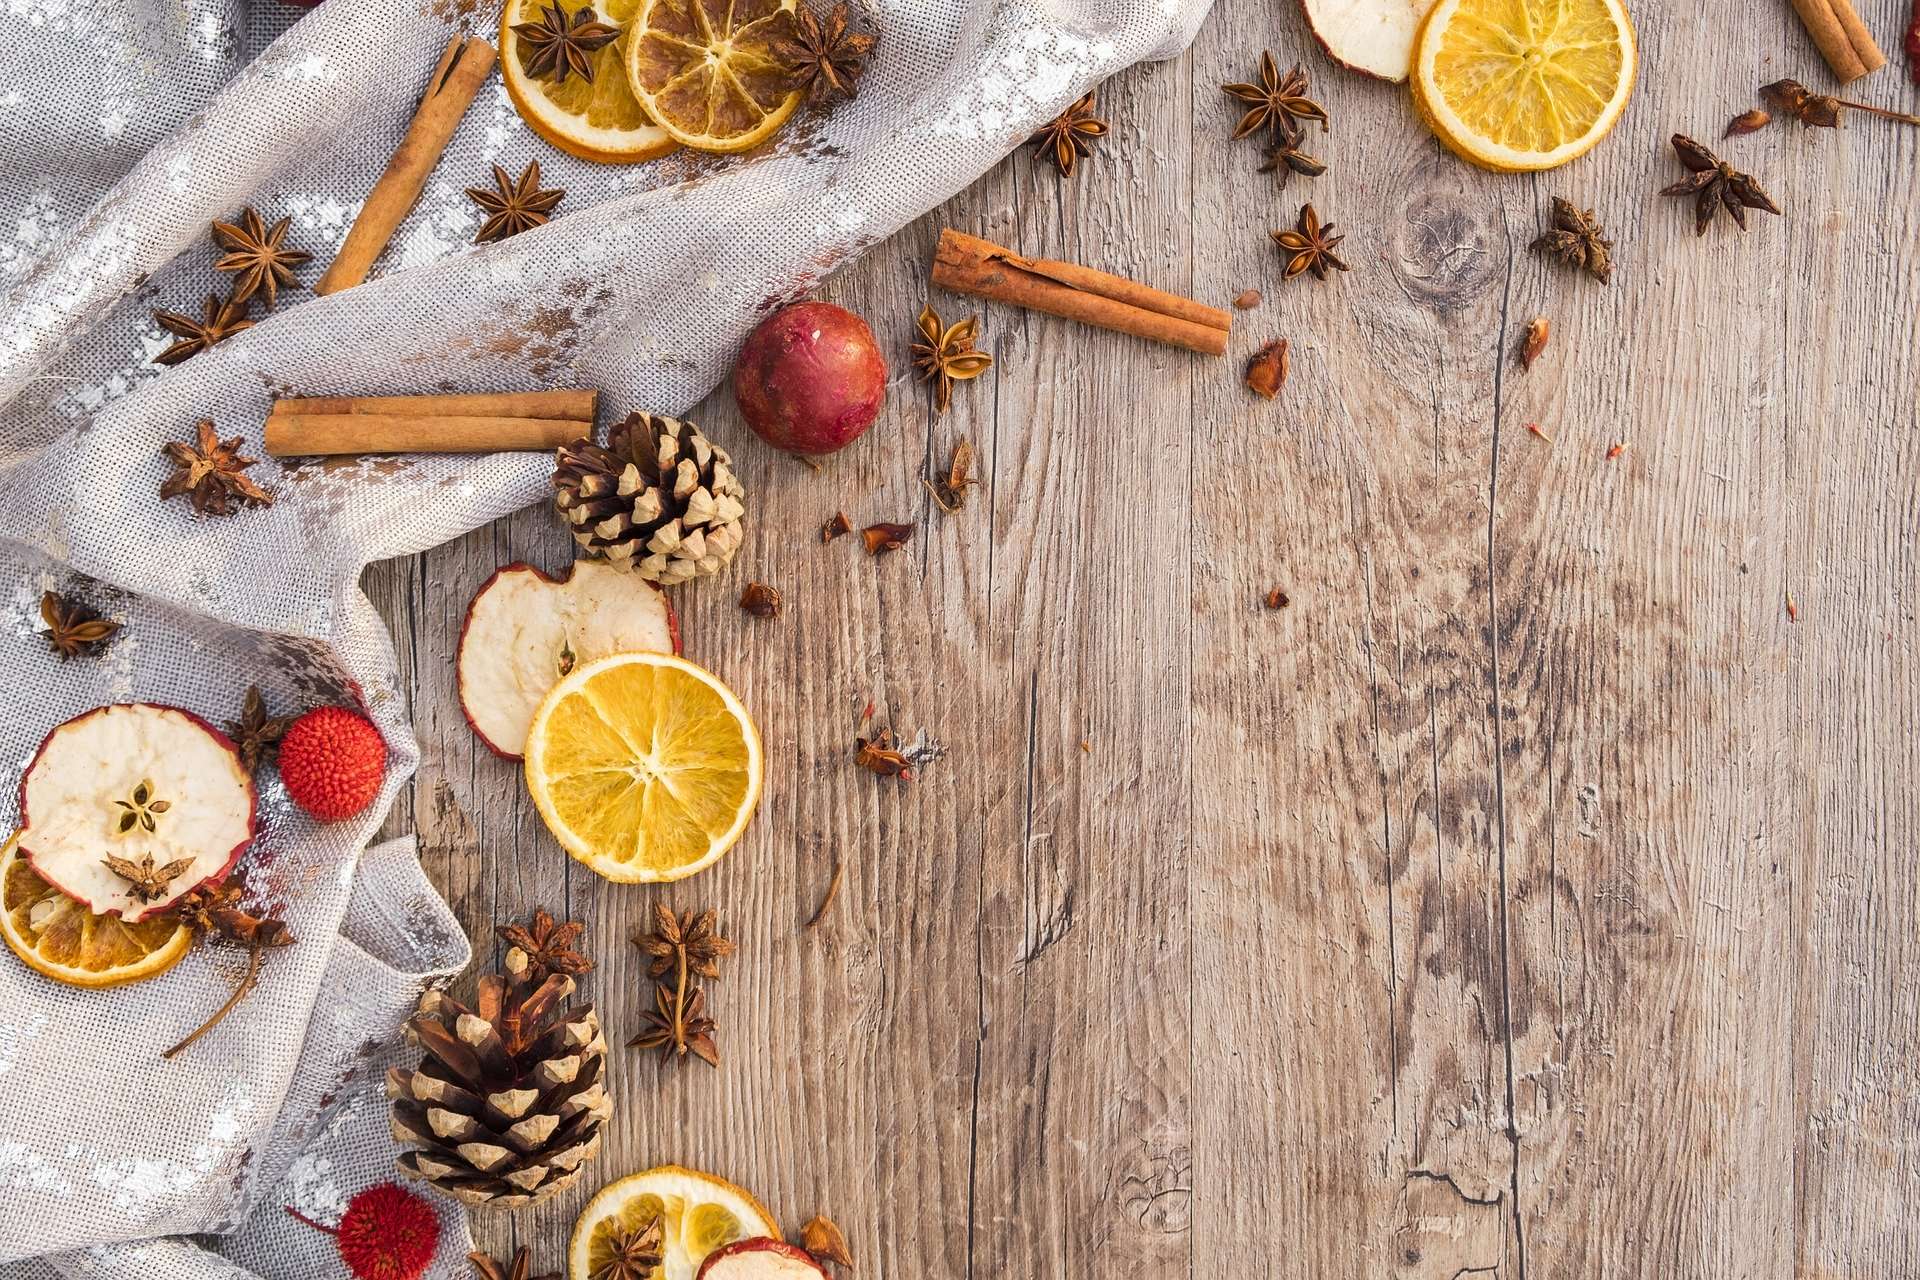 Optimisez votre esprit de Noël avec les huiles essentielles - Blog